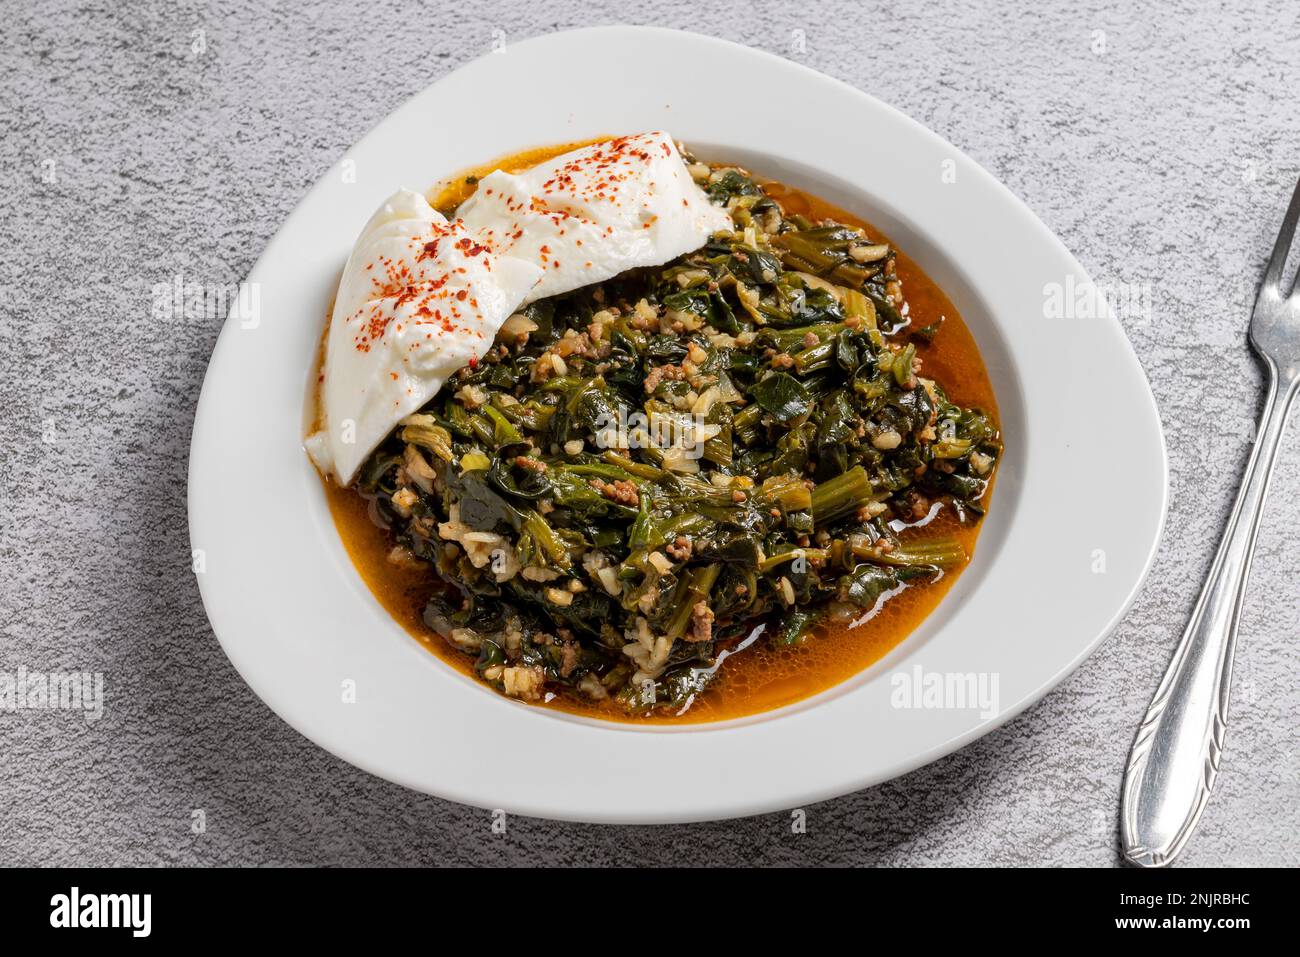 Repas traditionnel aux épinards turcs avec riz et viande hachée et yaourt sur une assiette en porcelaine blanche Banque D'Images